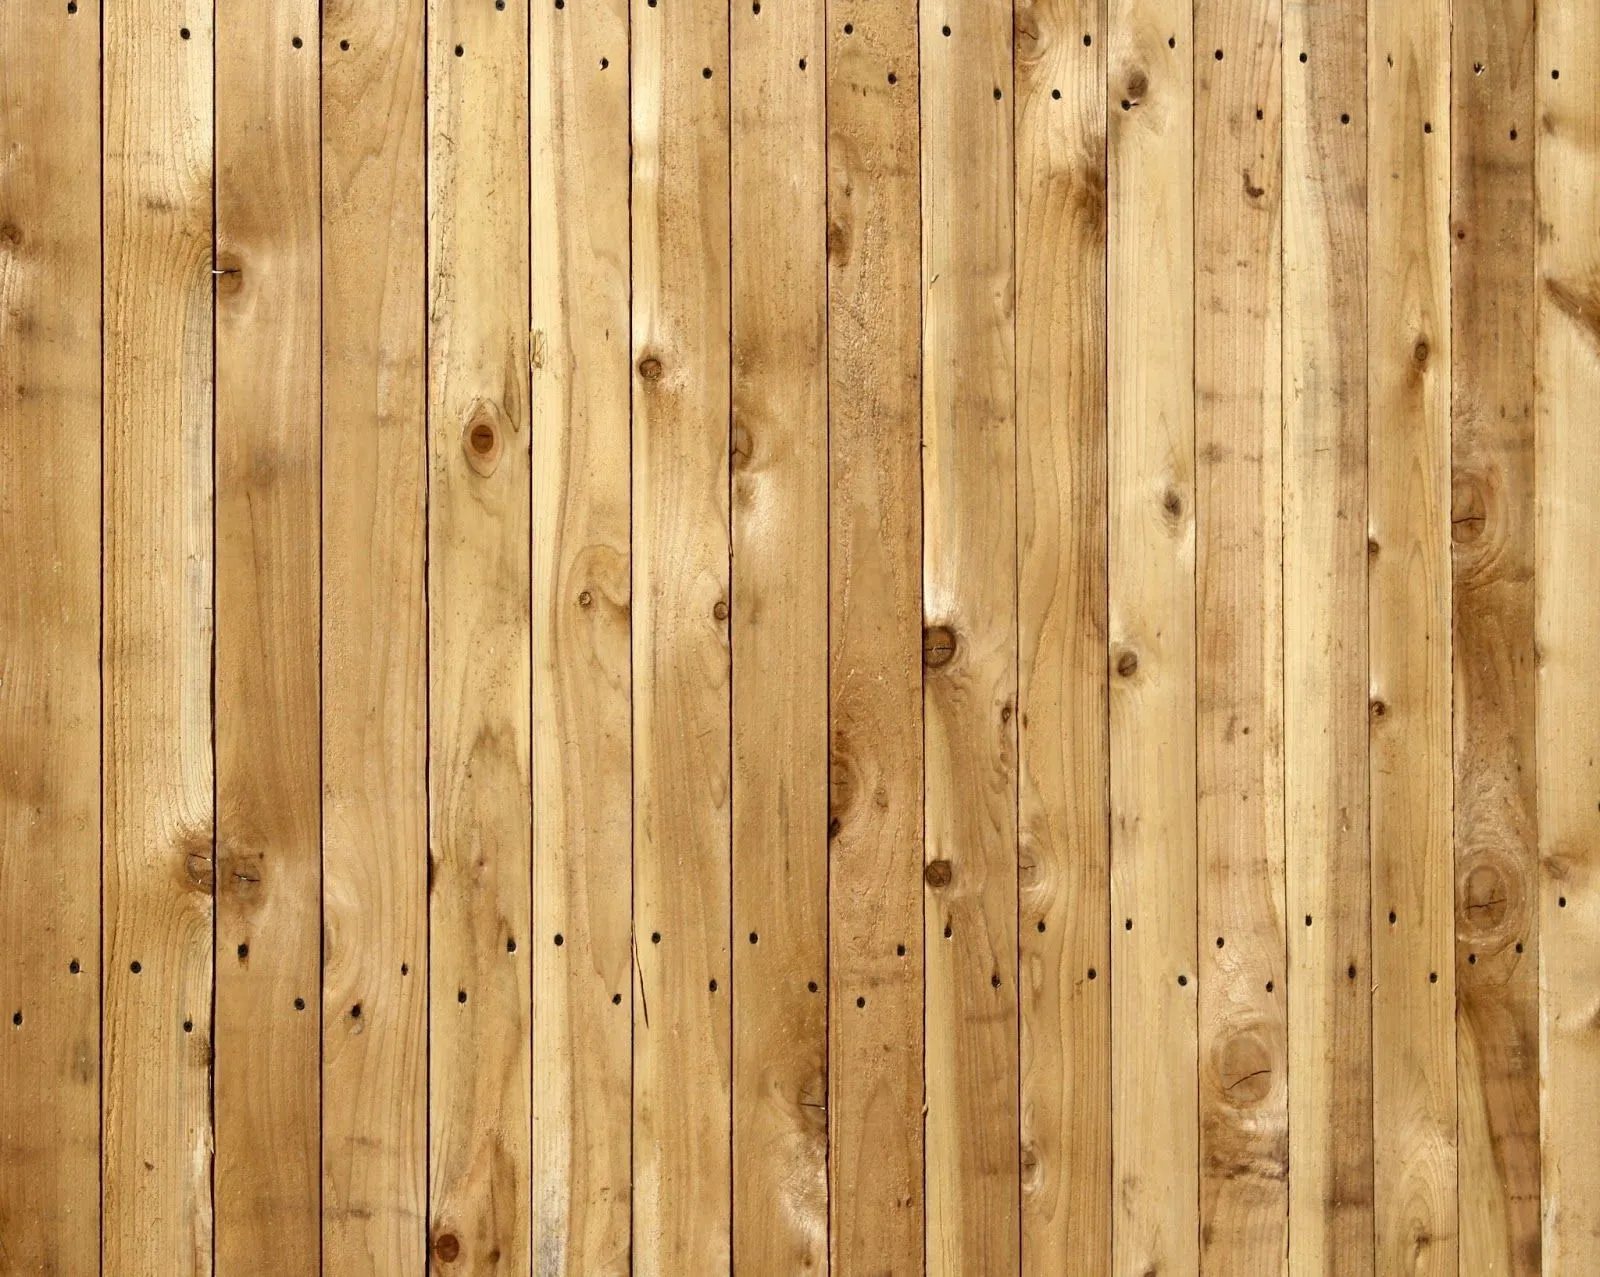 Creative Mindly: Fondos de madera para tus diseños o lo que sea